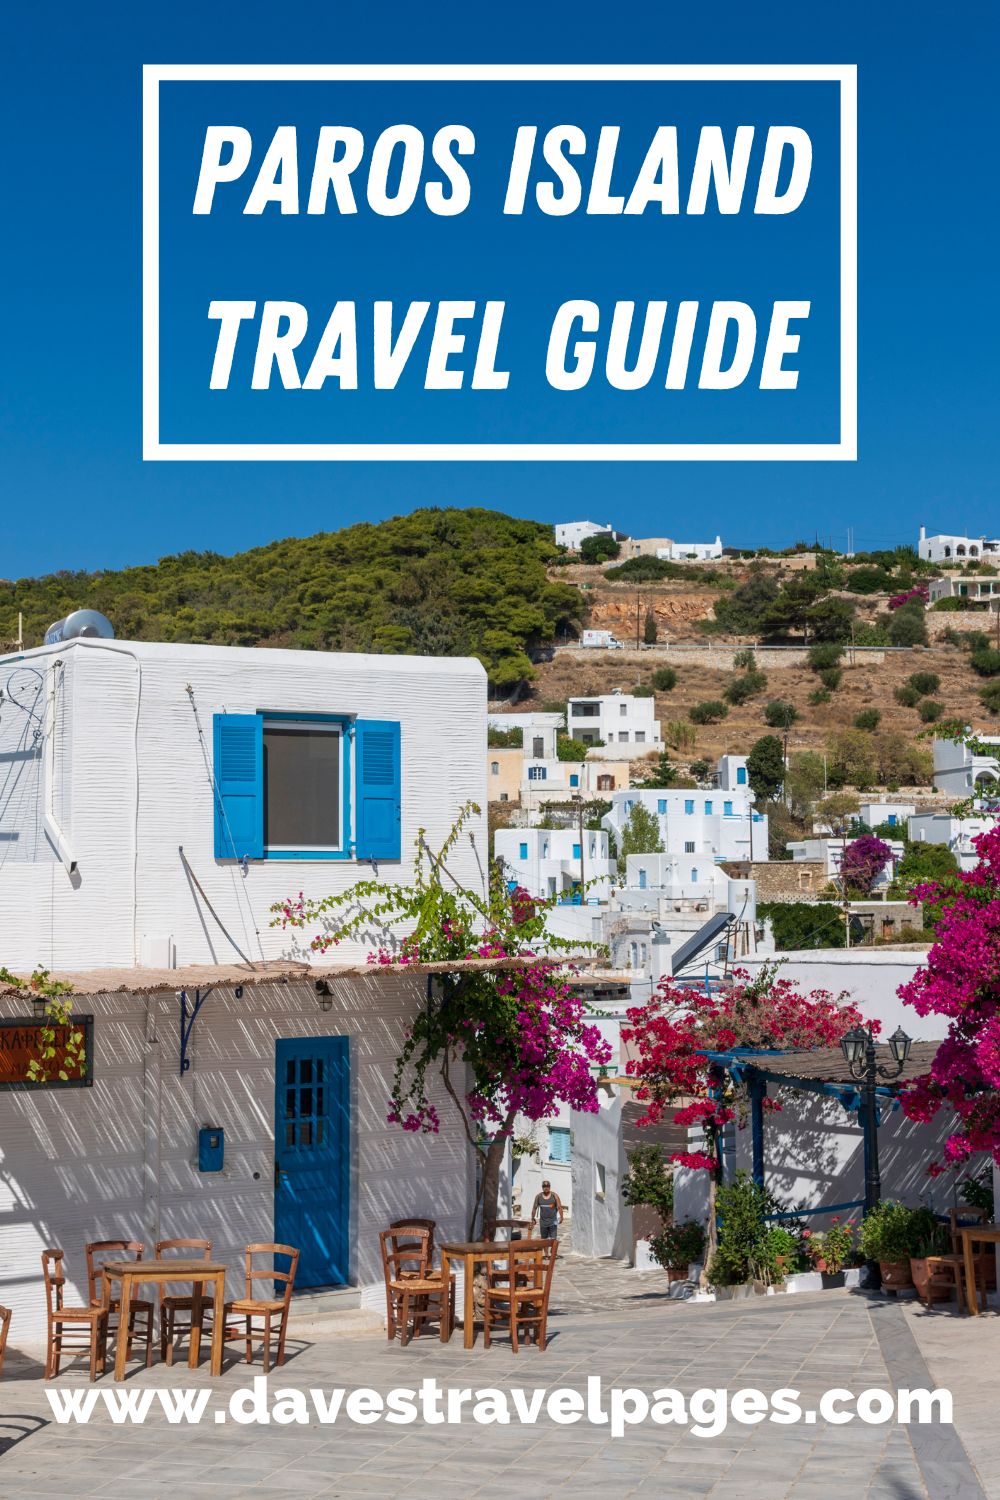 Paros Island Travel Guide